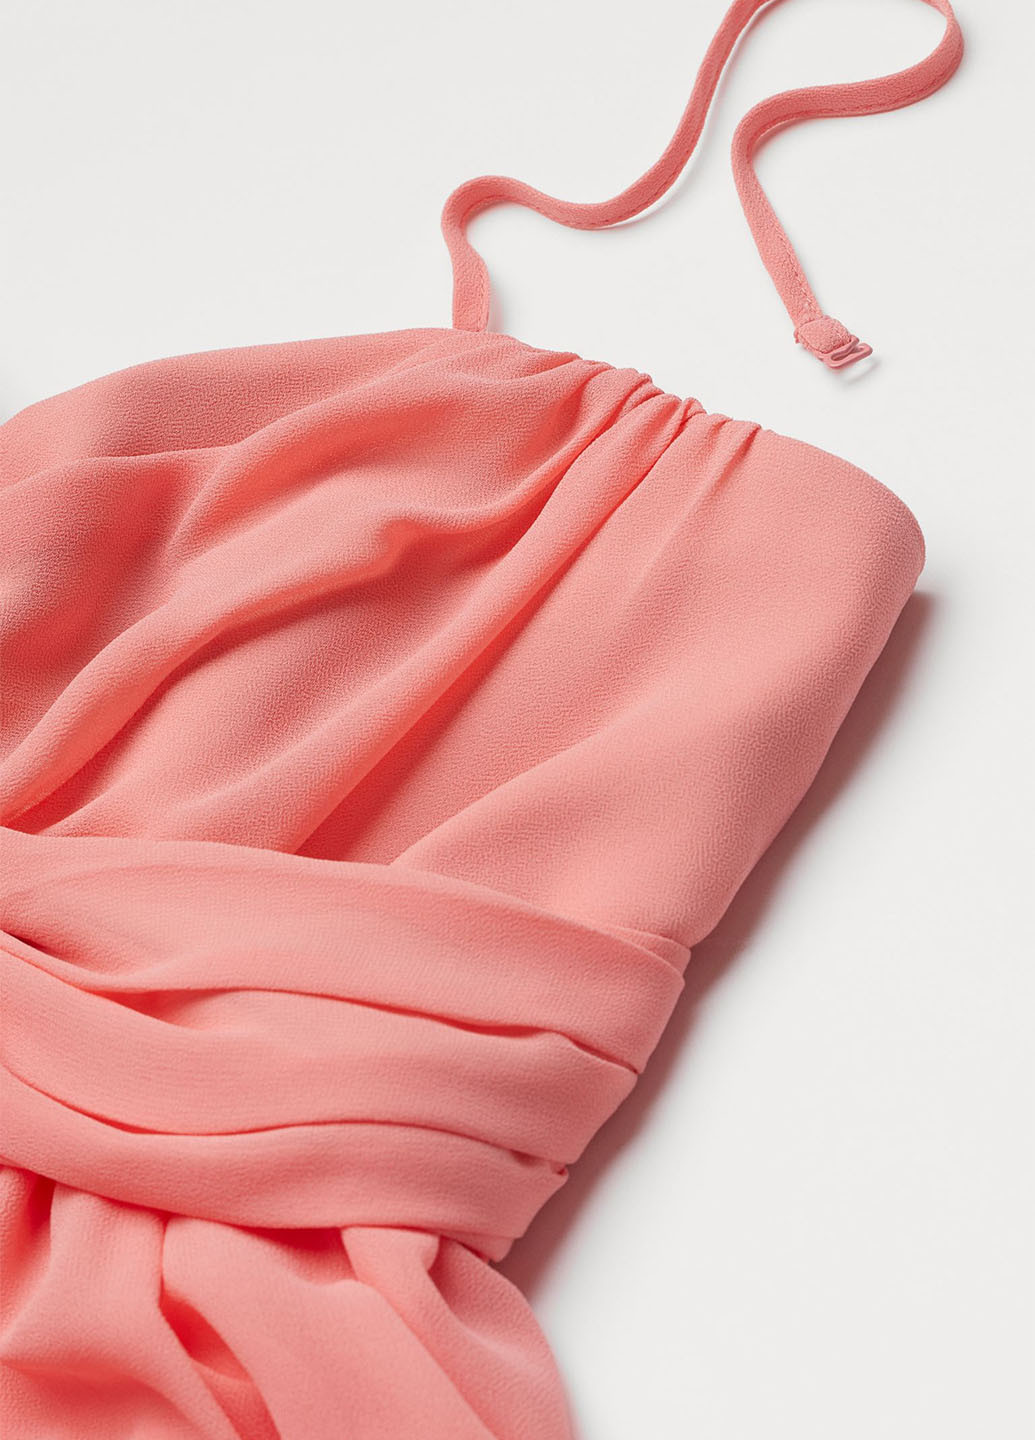 Розовое вечернее платье для беременных и кормящих H&M однотонное